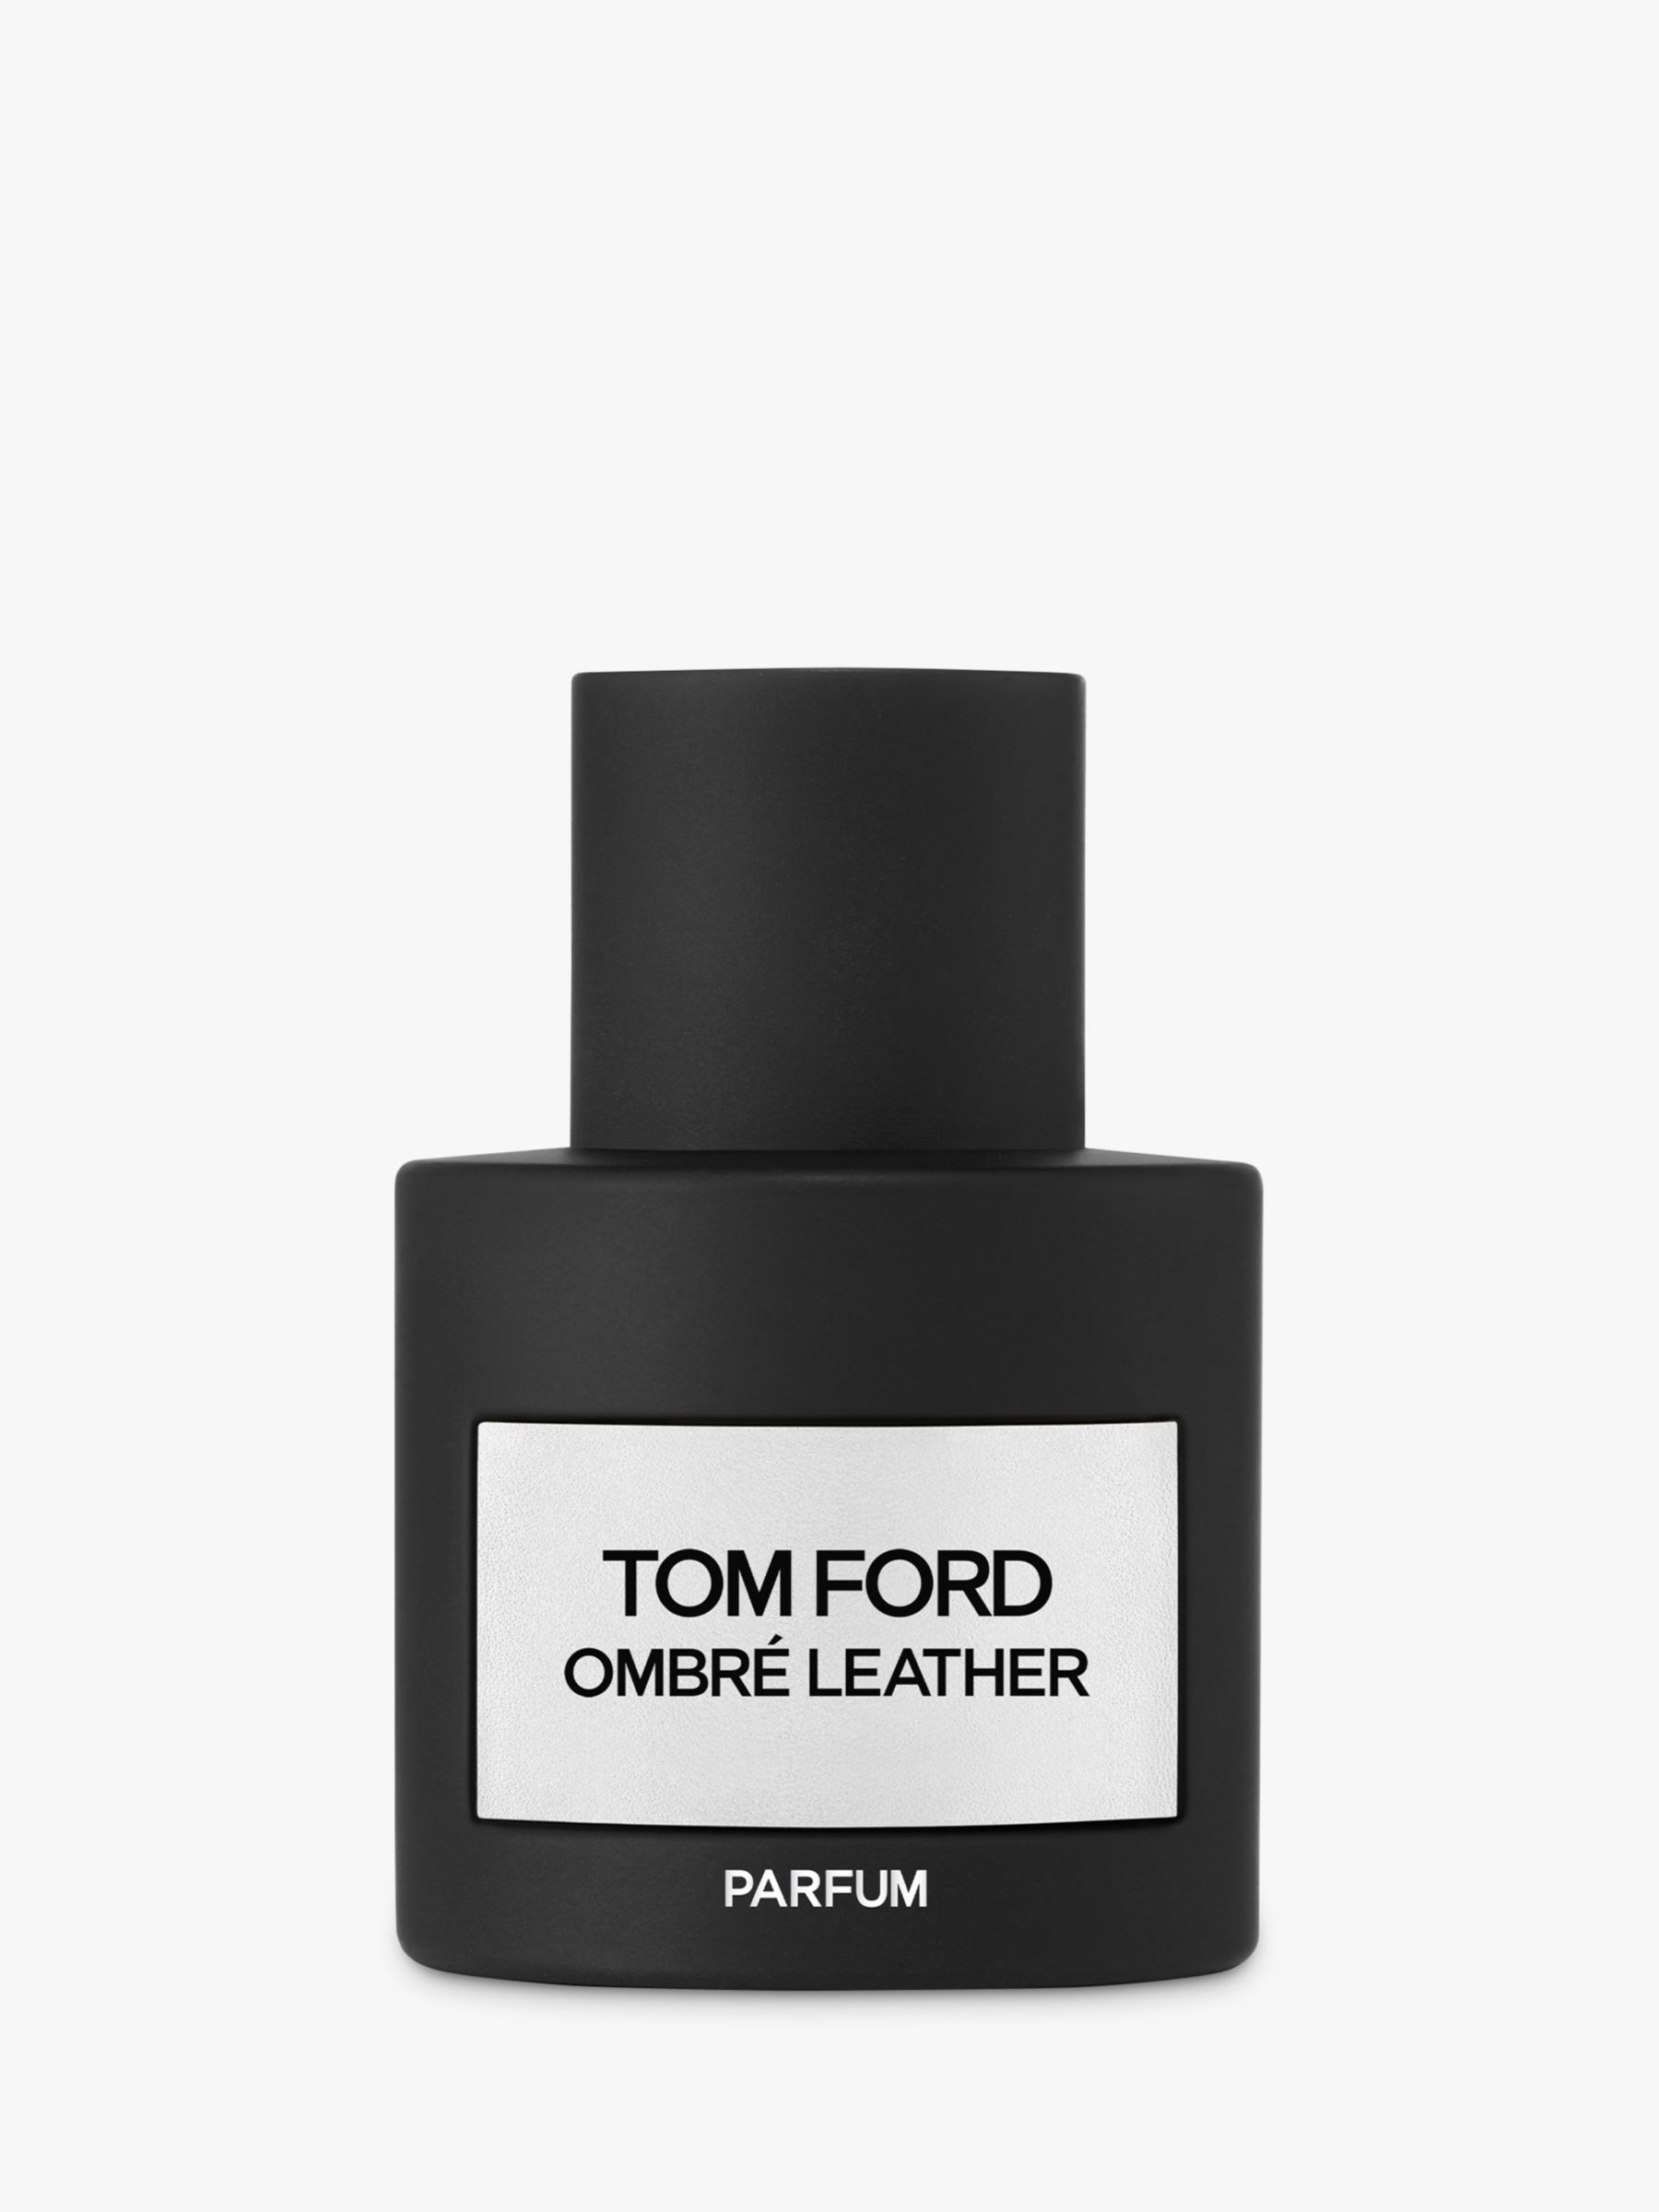 TOM FORD Men's Aftershave | John Lewis & Partners